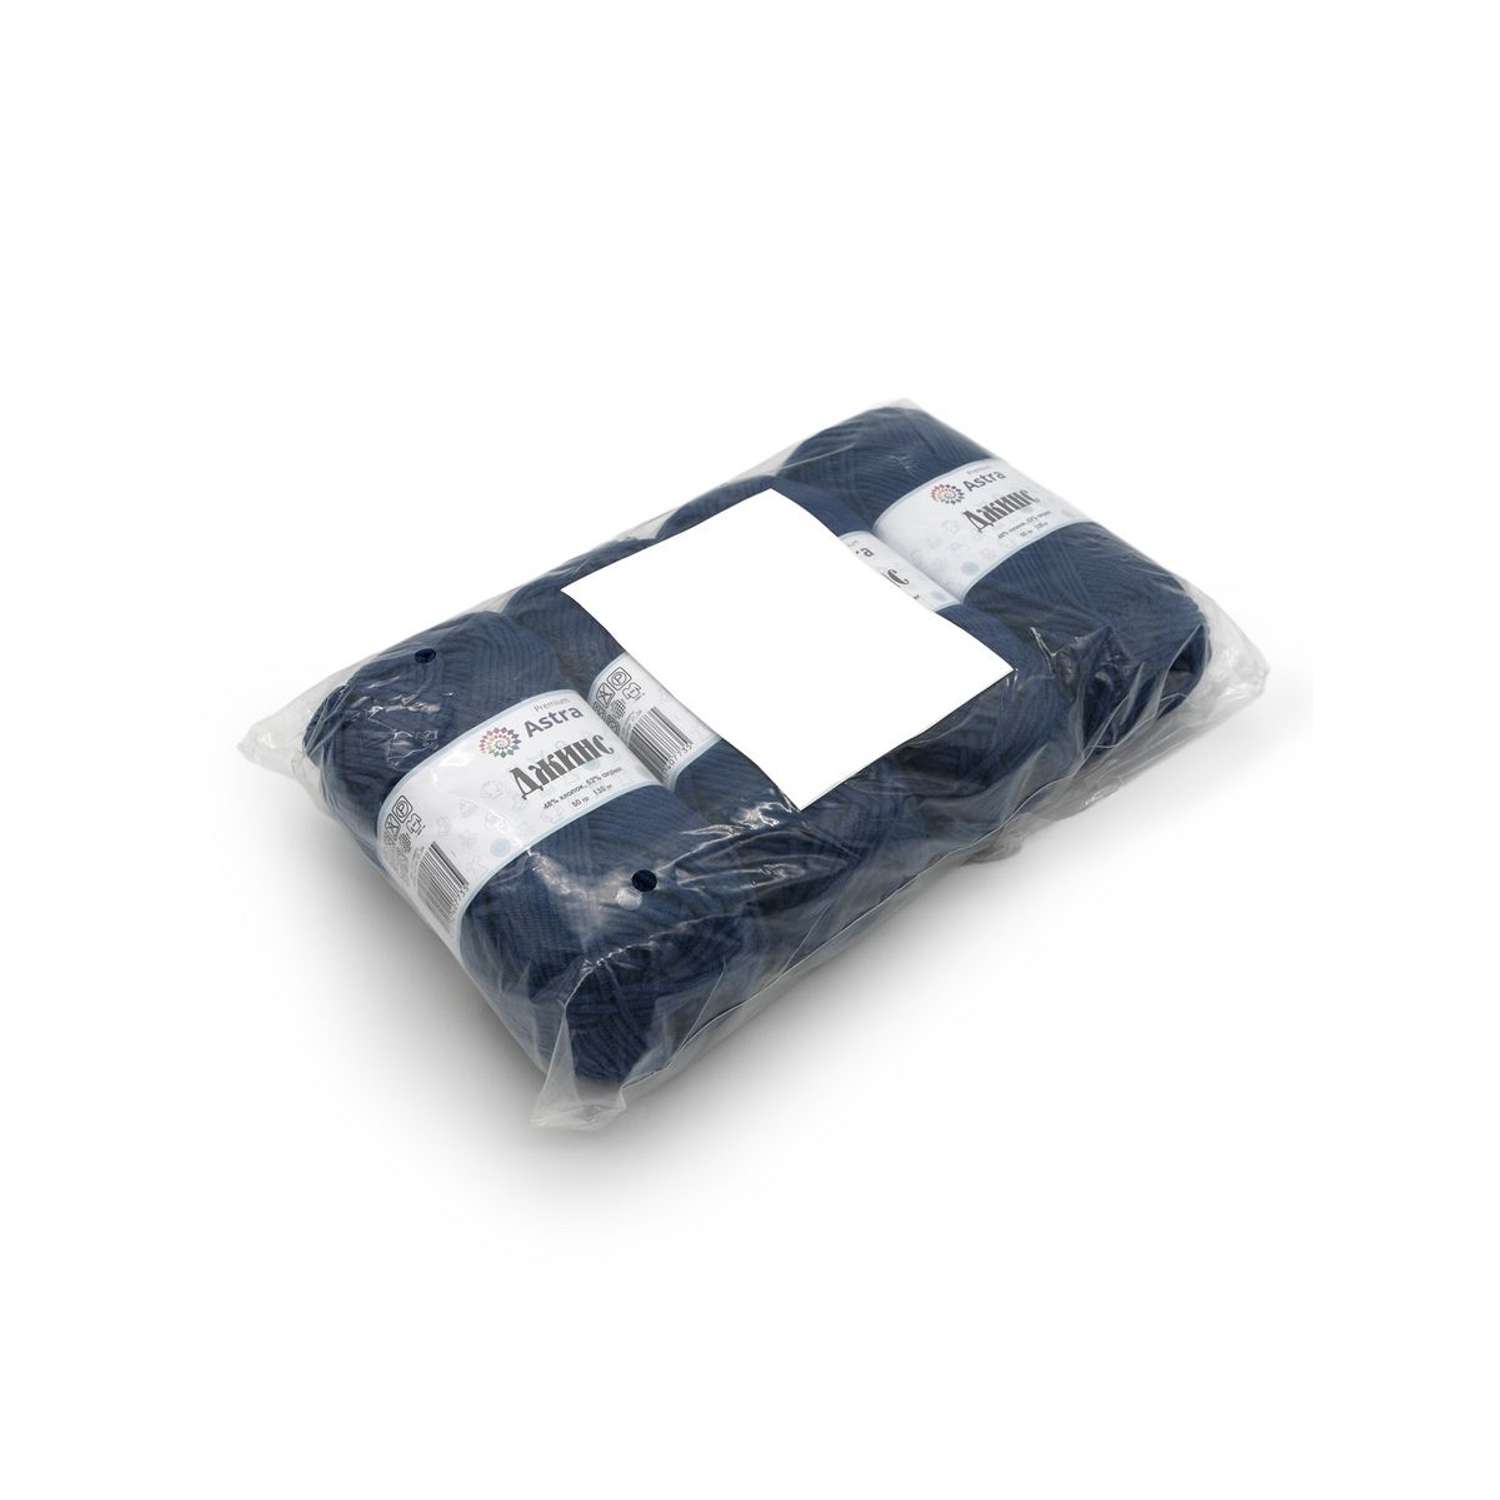 Пряжа для вязания Astra Premium джинс для повседневной одежды акрил хлопок 50 гр 135 м 685 индиго 4 мотка - фото 13